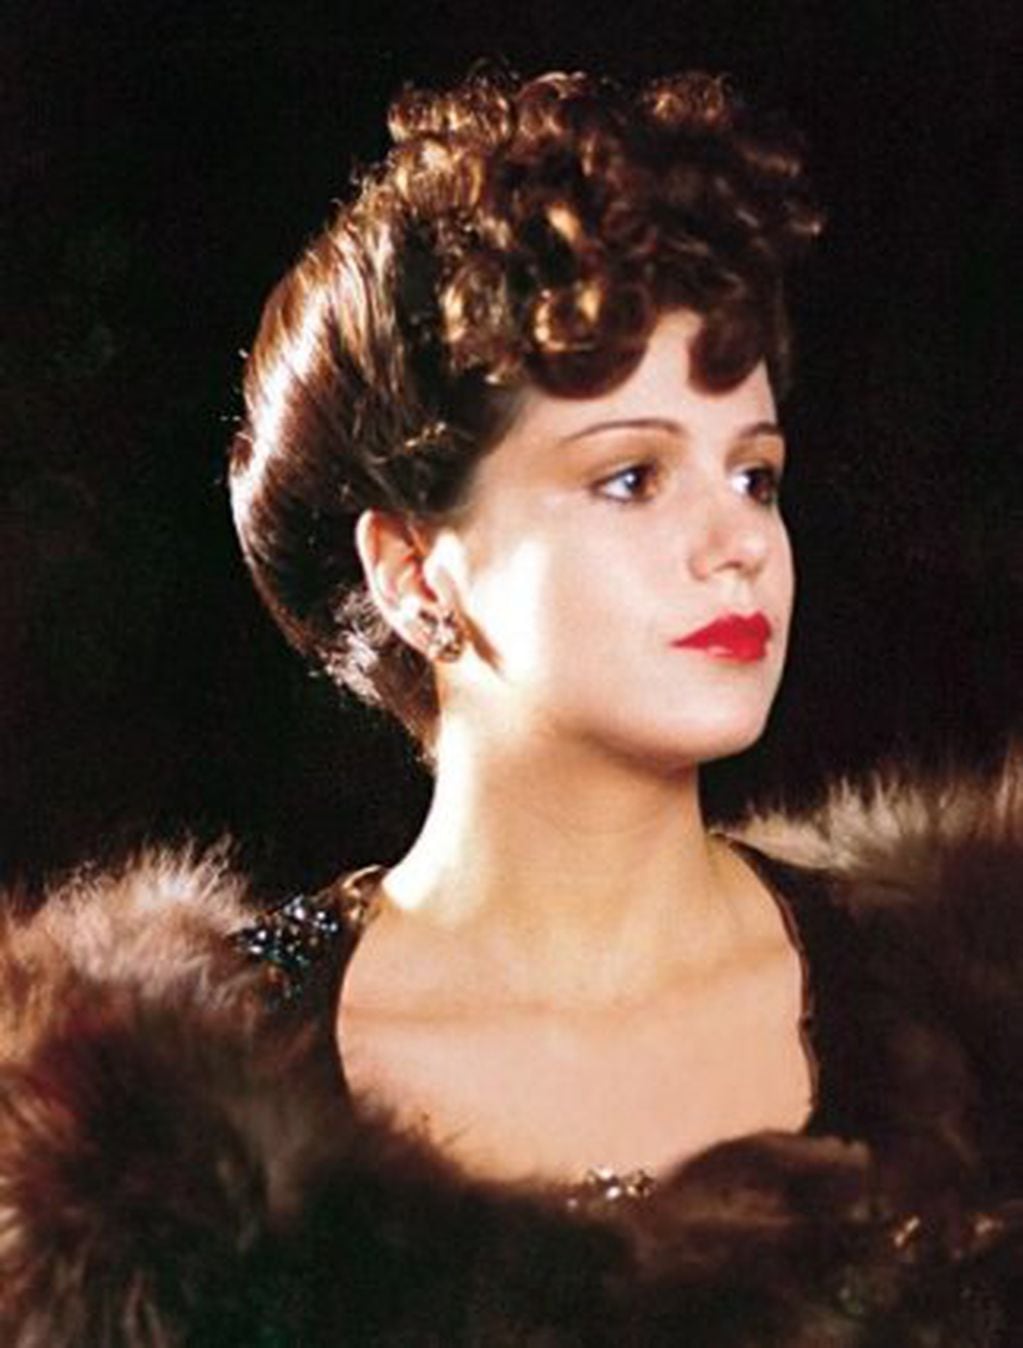 Flavia caracterizada como Eva Duarte en 1983.